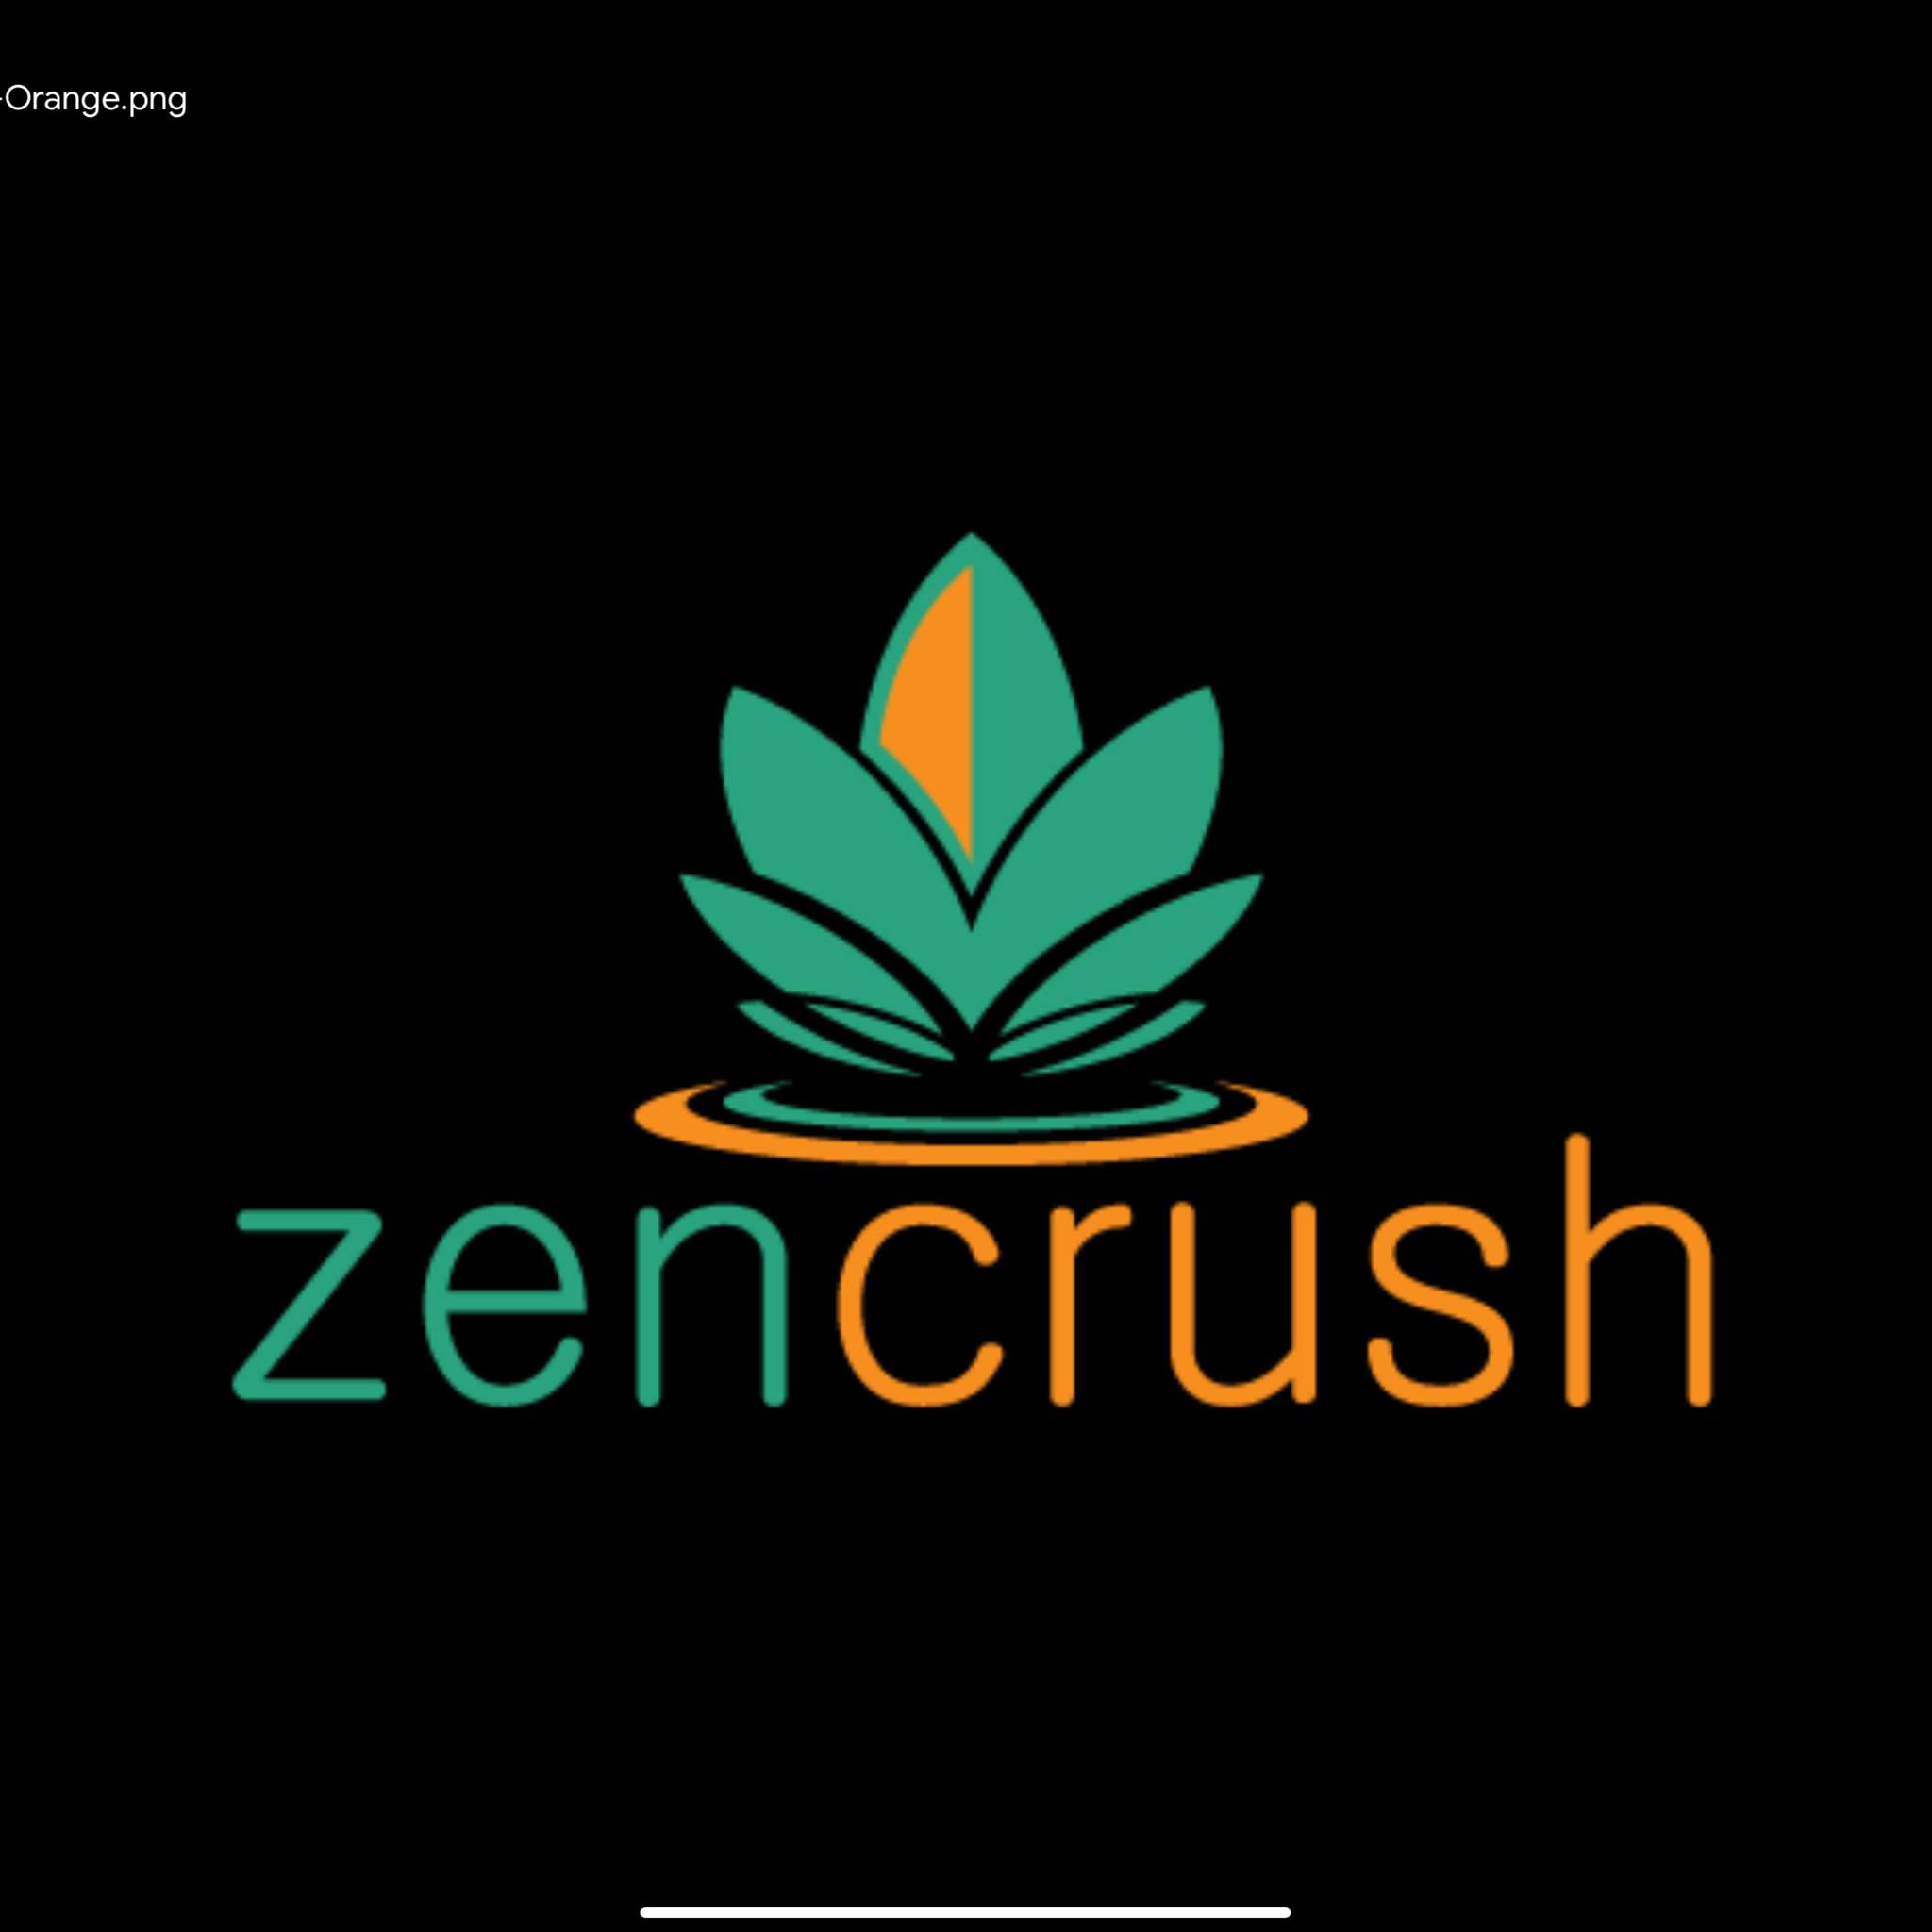 zencrush's Logo